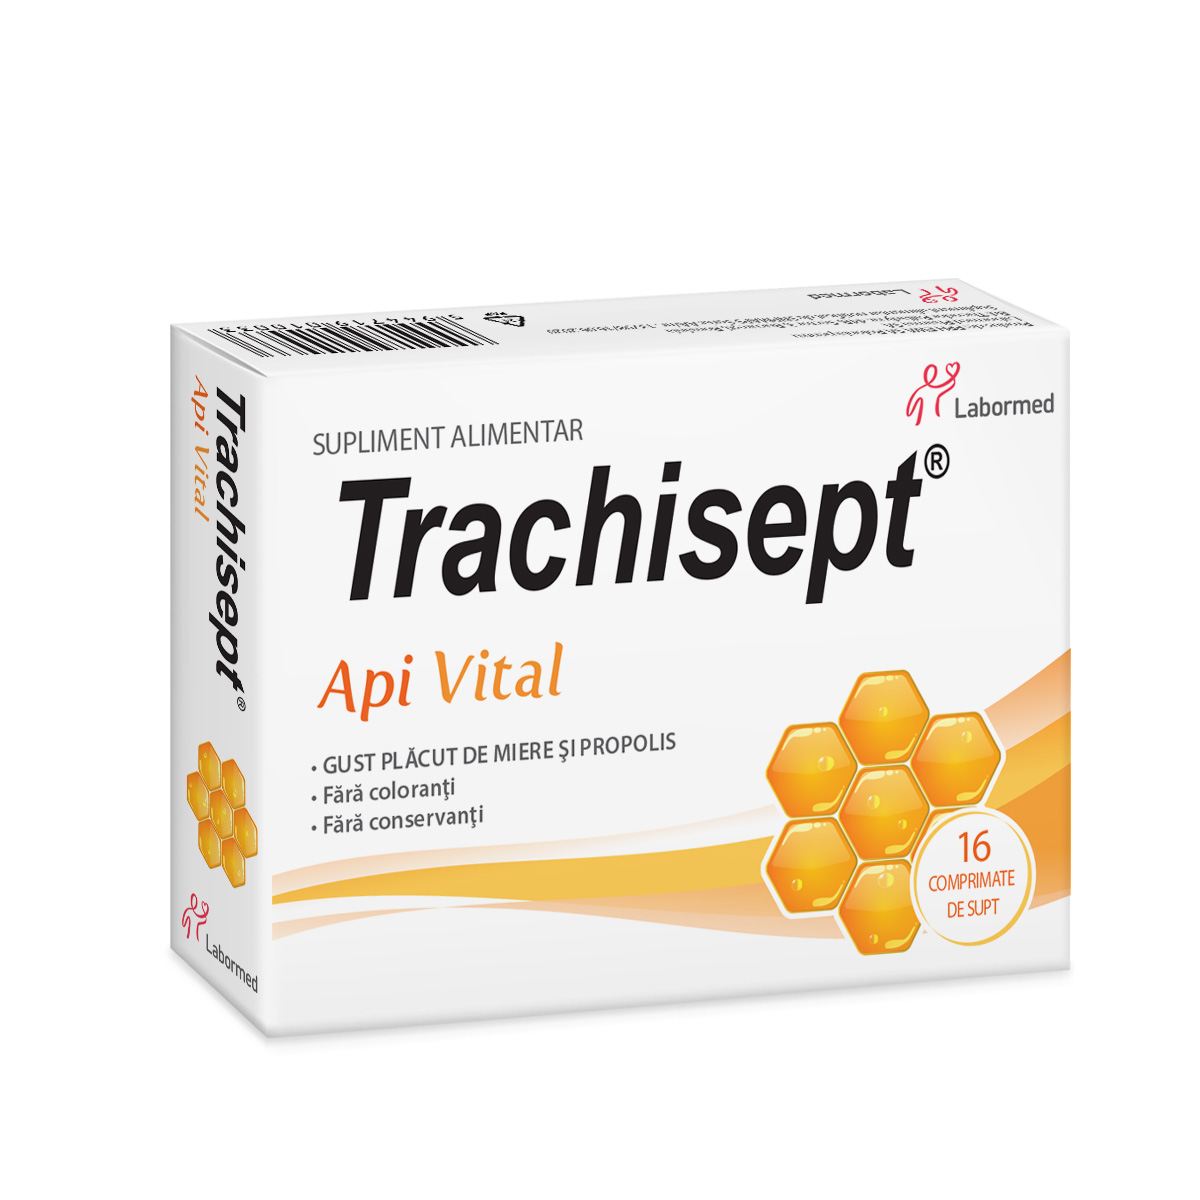 Trachisept ApiVital, 16 comprimate pentru supt, Labormed